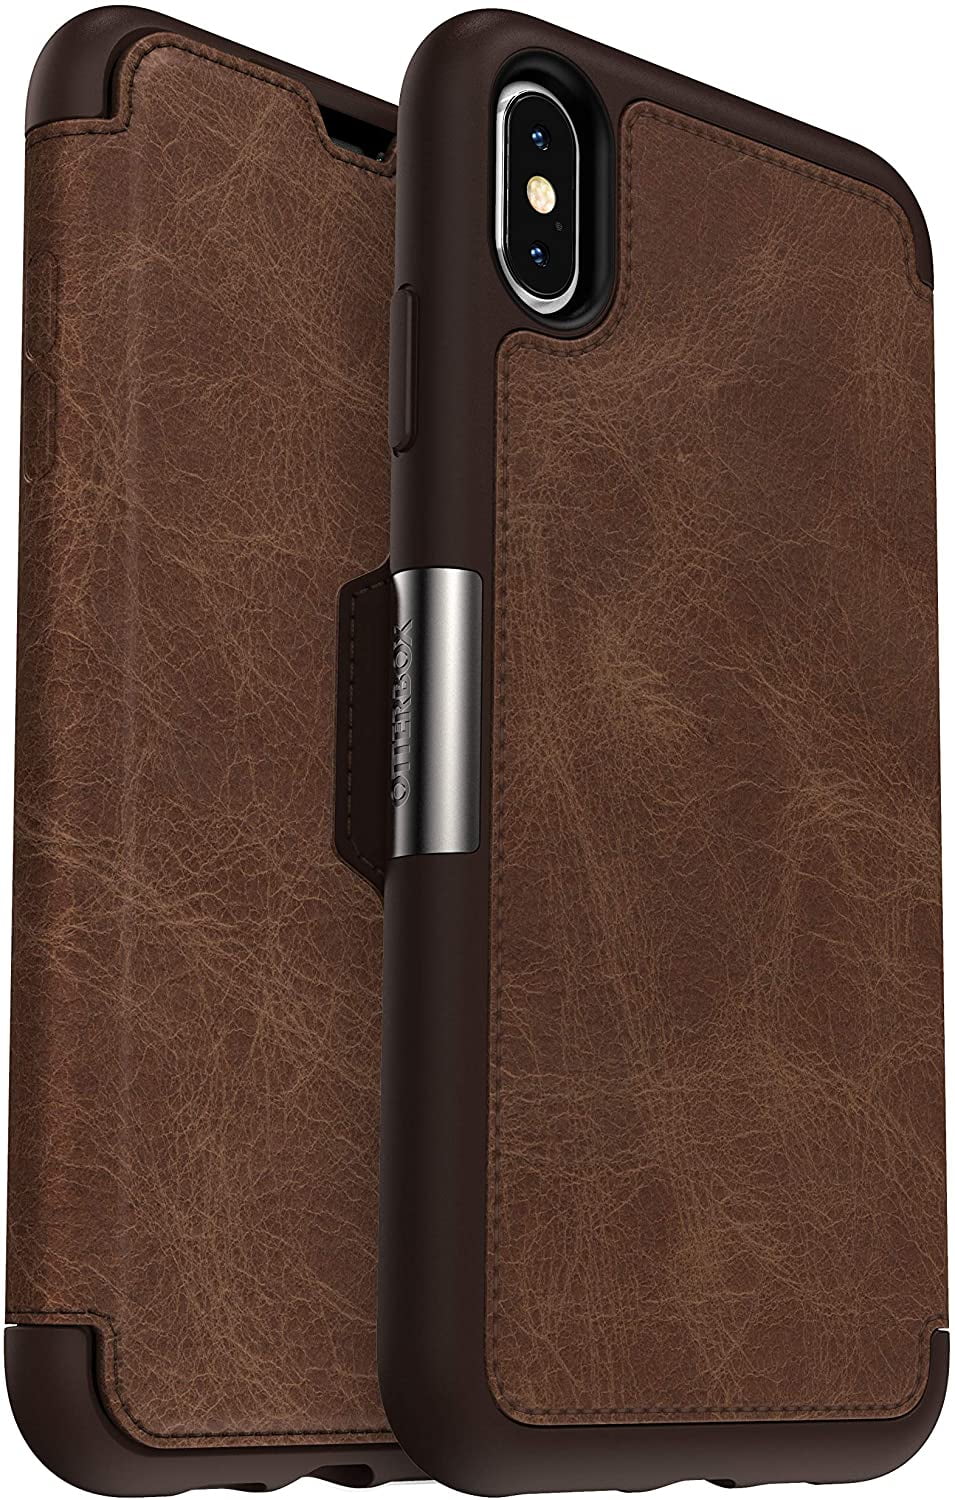 OtterBox Strada Series Leather Folio Case for iPhone XS Max, Espresso